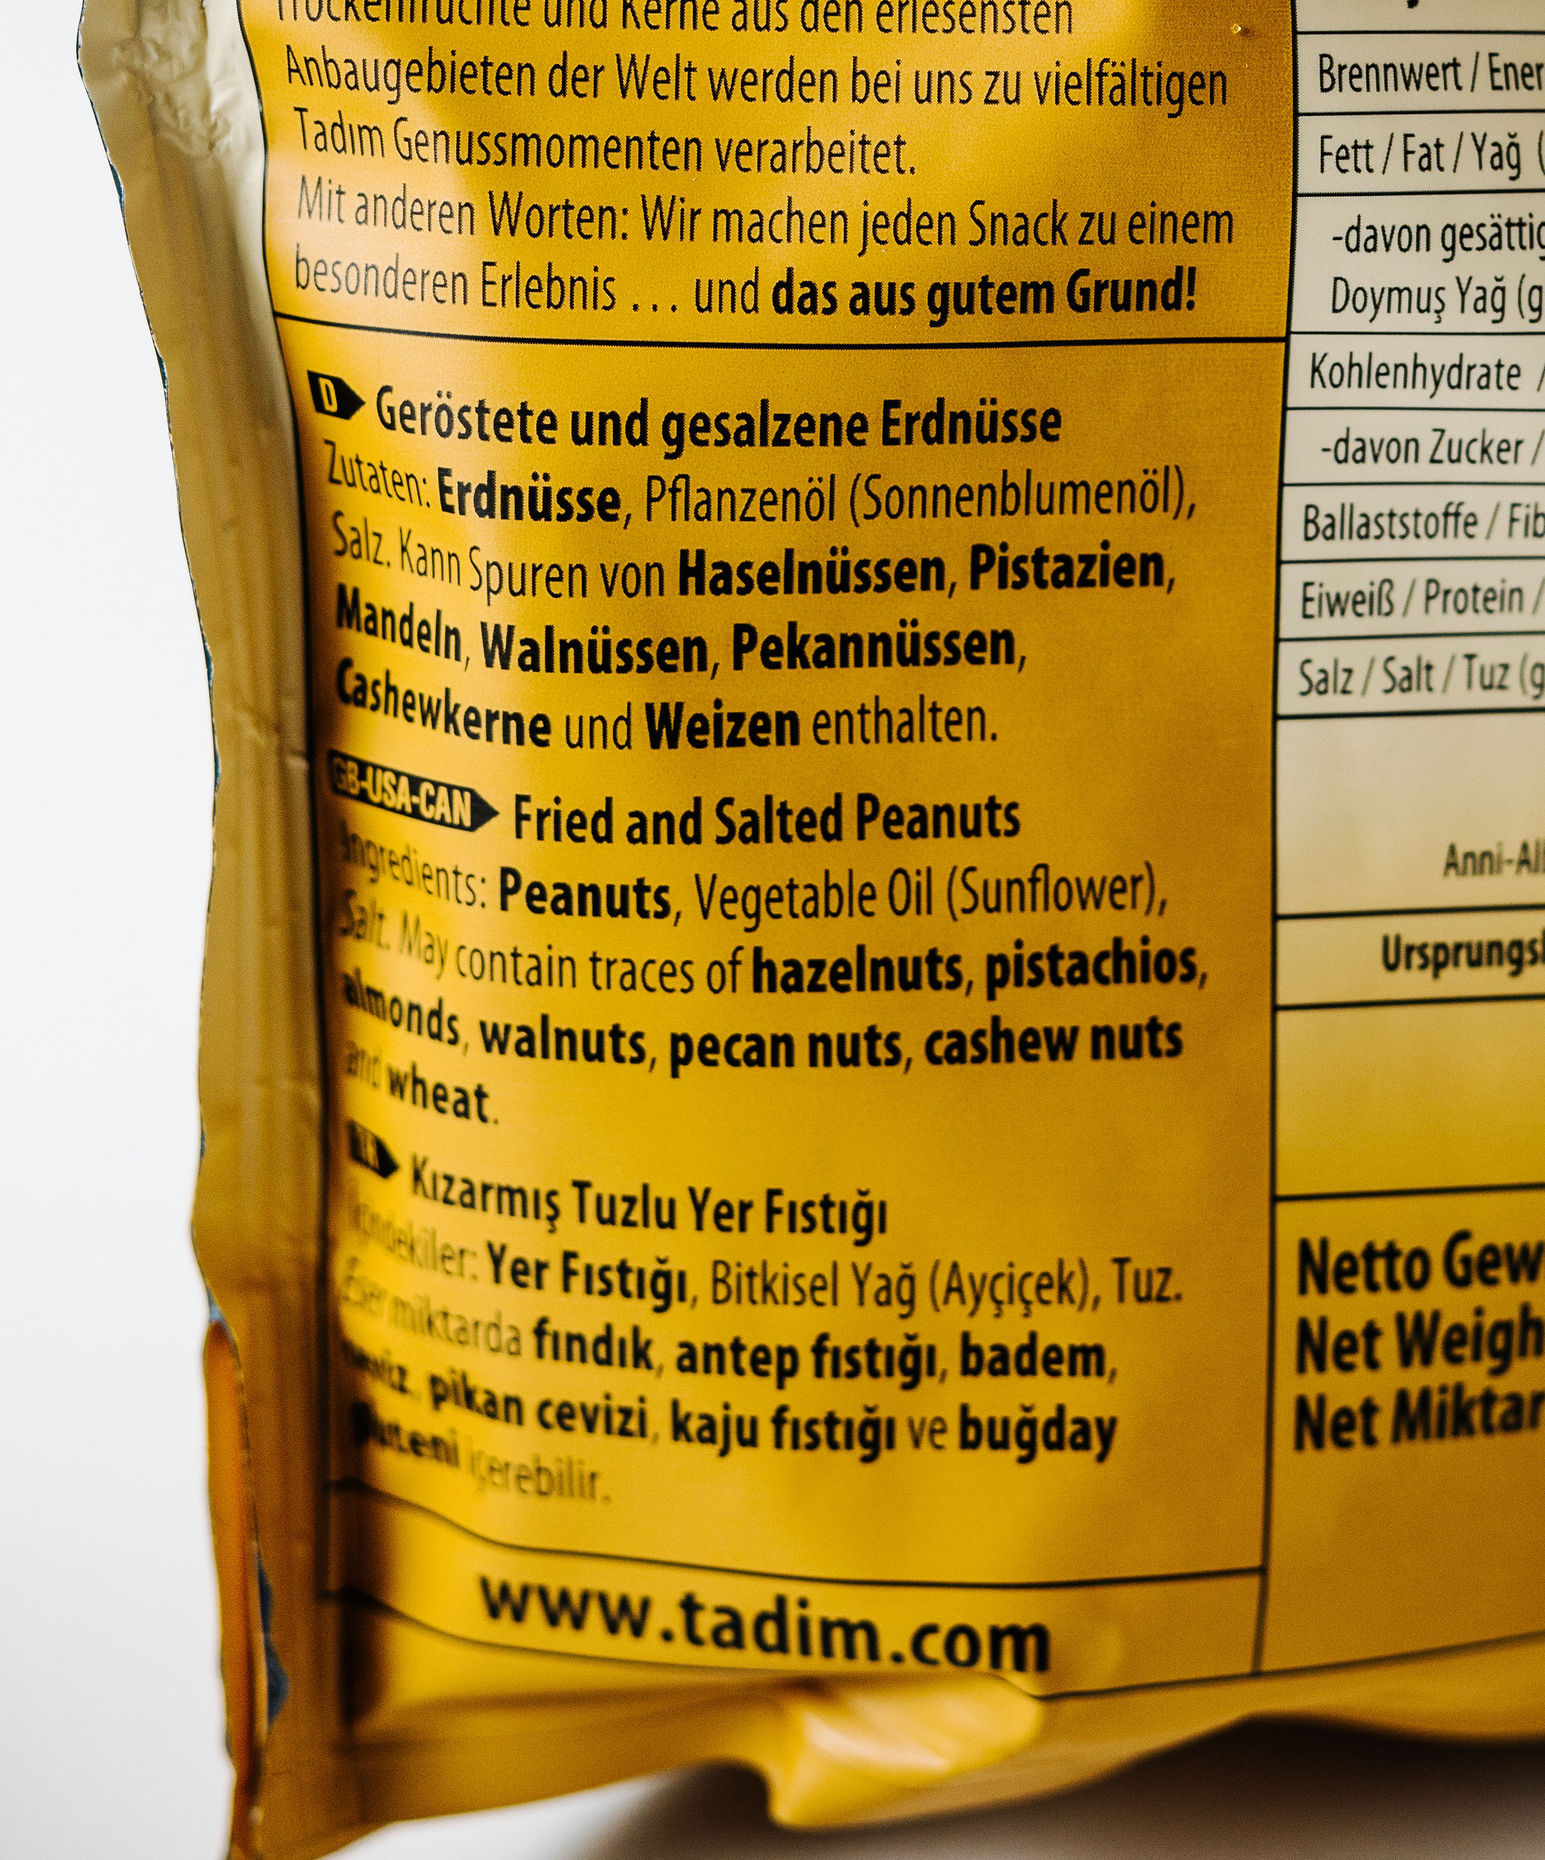 Tadim Geröstete und gesalzene Erdnüsse